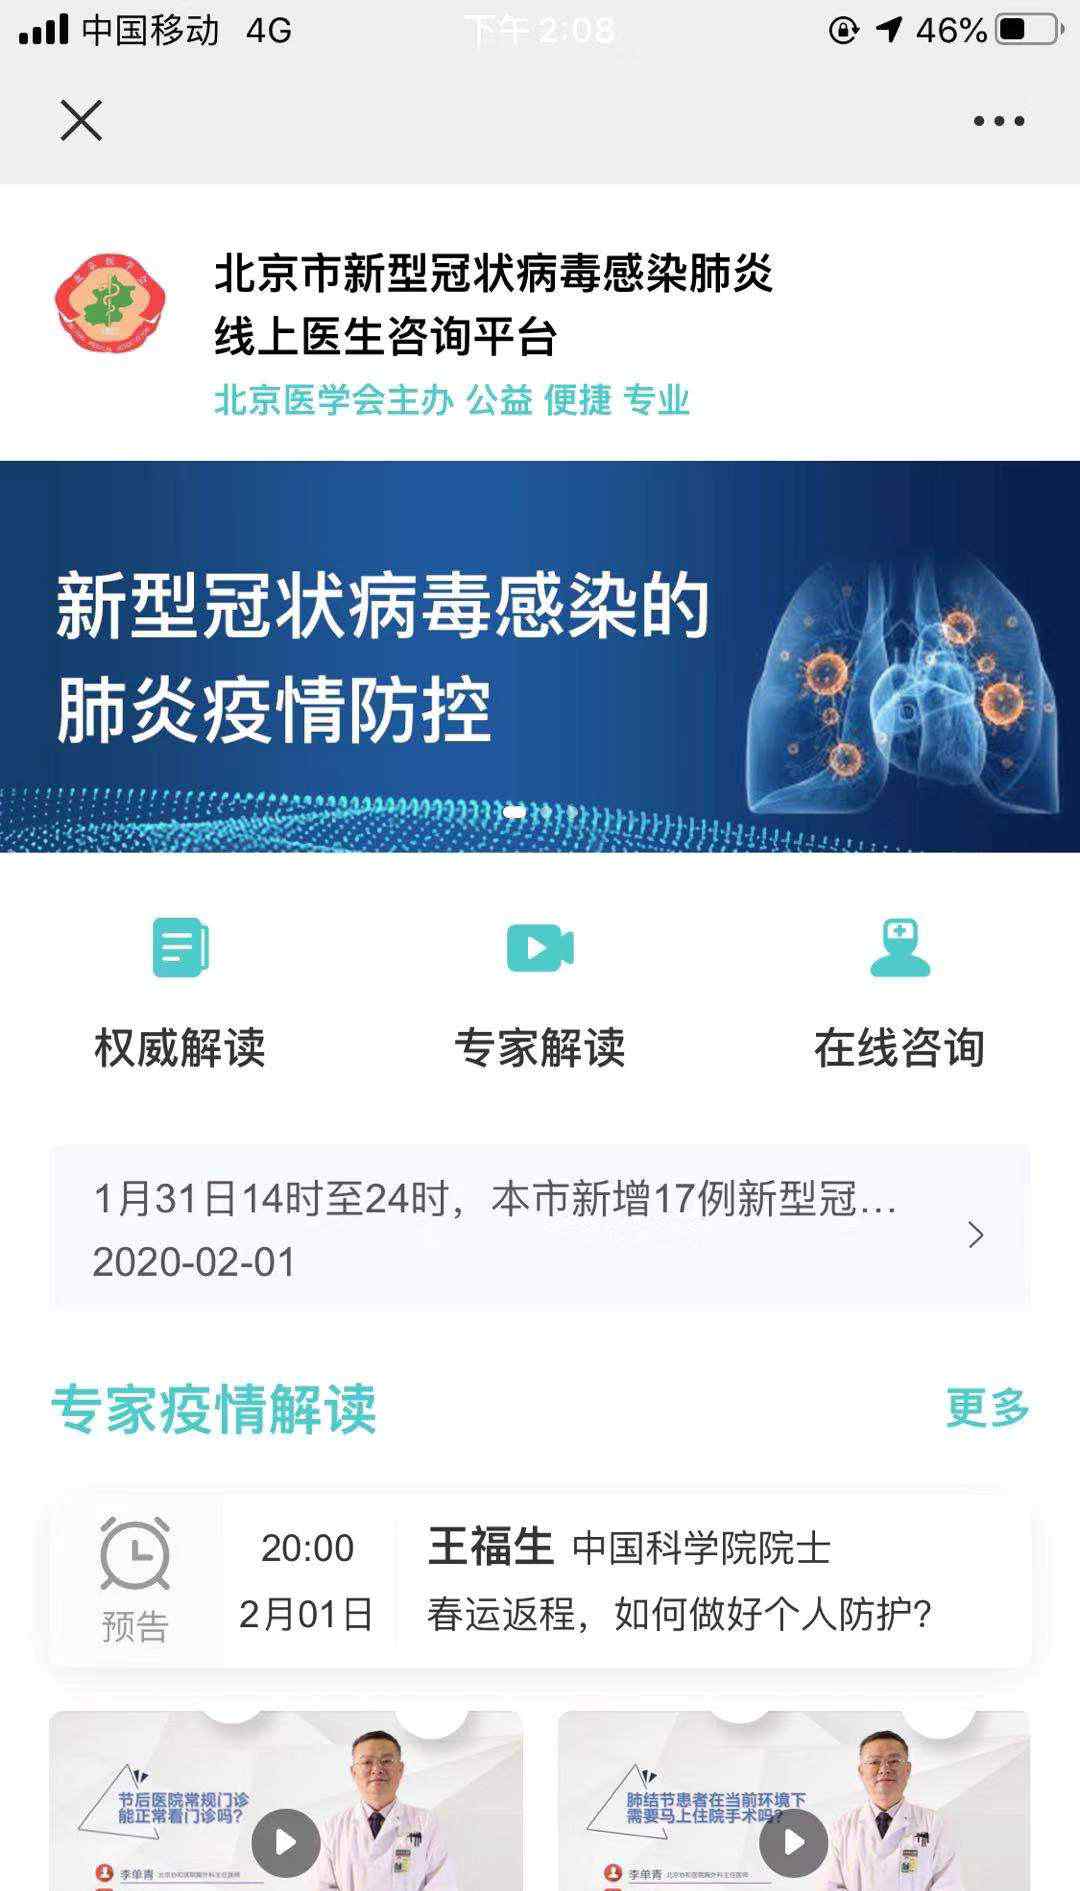 免费医生在线咨询 北京新型肺炎线上医生咨询平台开通 24小时在线免费答疑